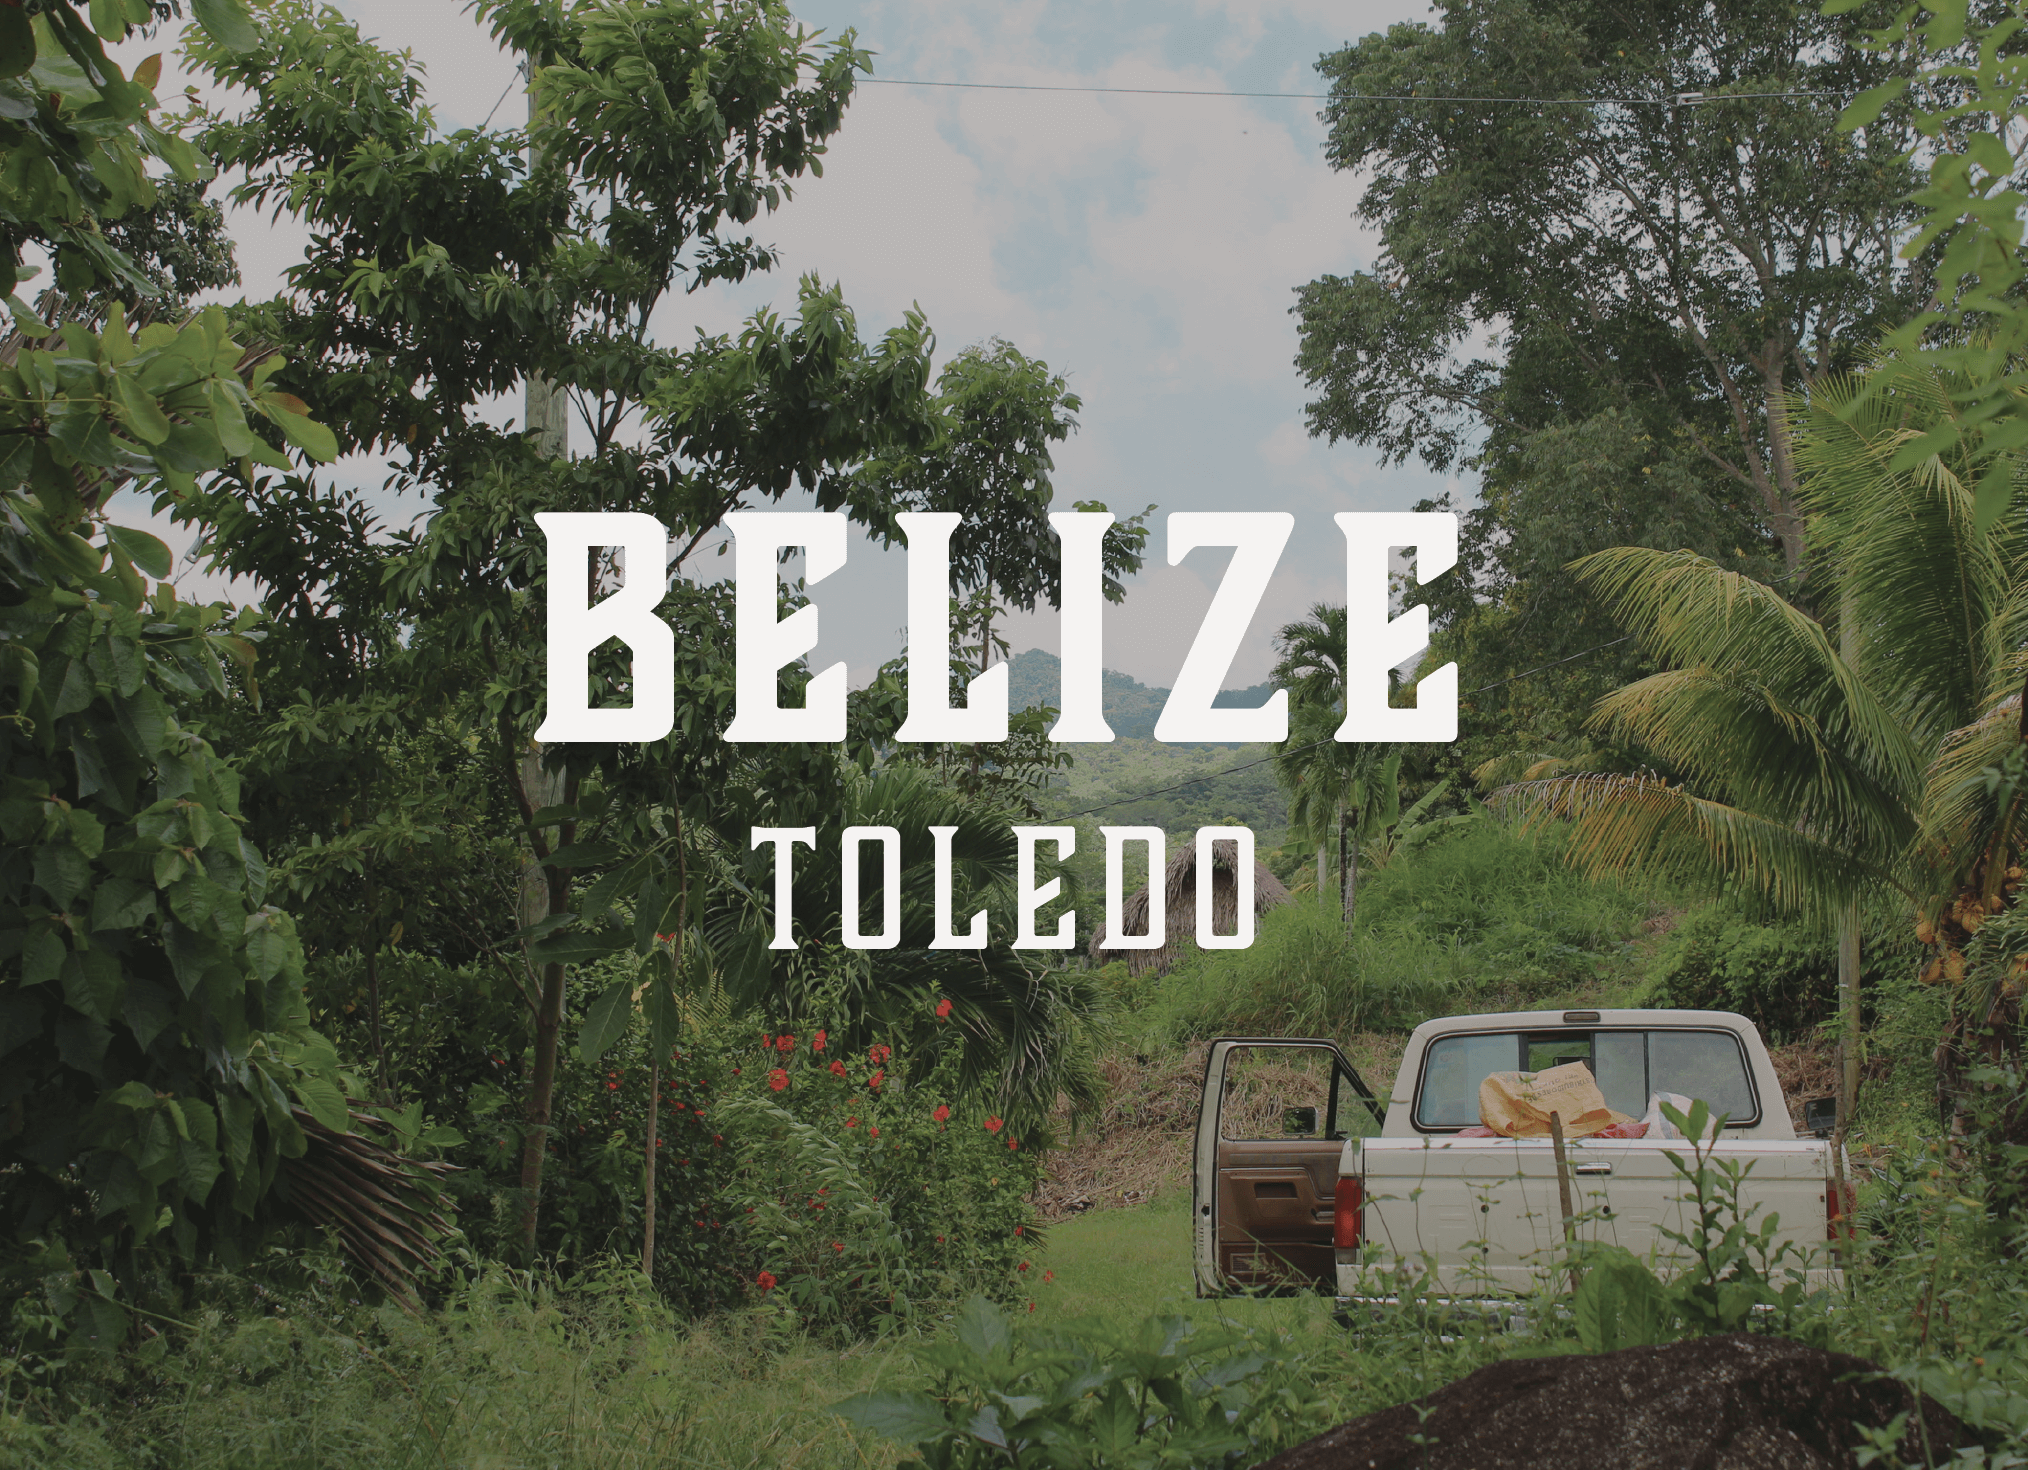 Toledo Belize button